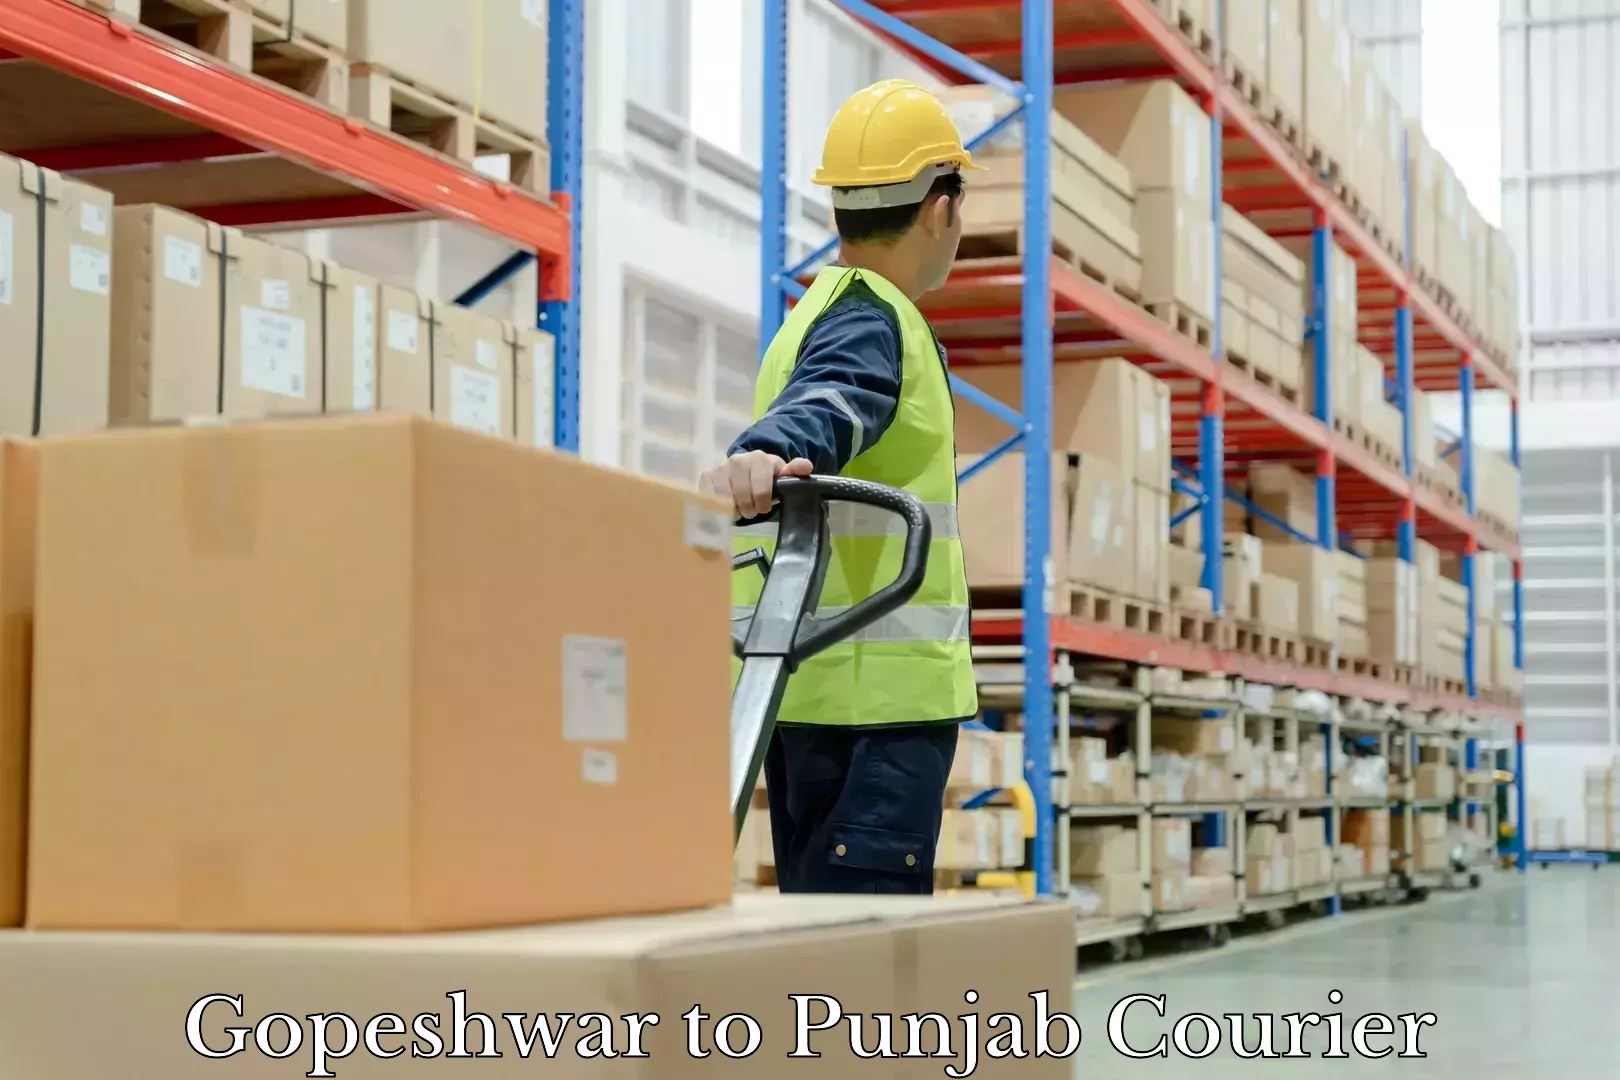 Luggage delivery optimization Gopeshwar to Punjab